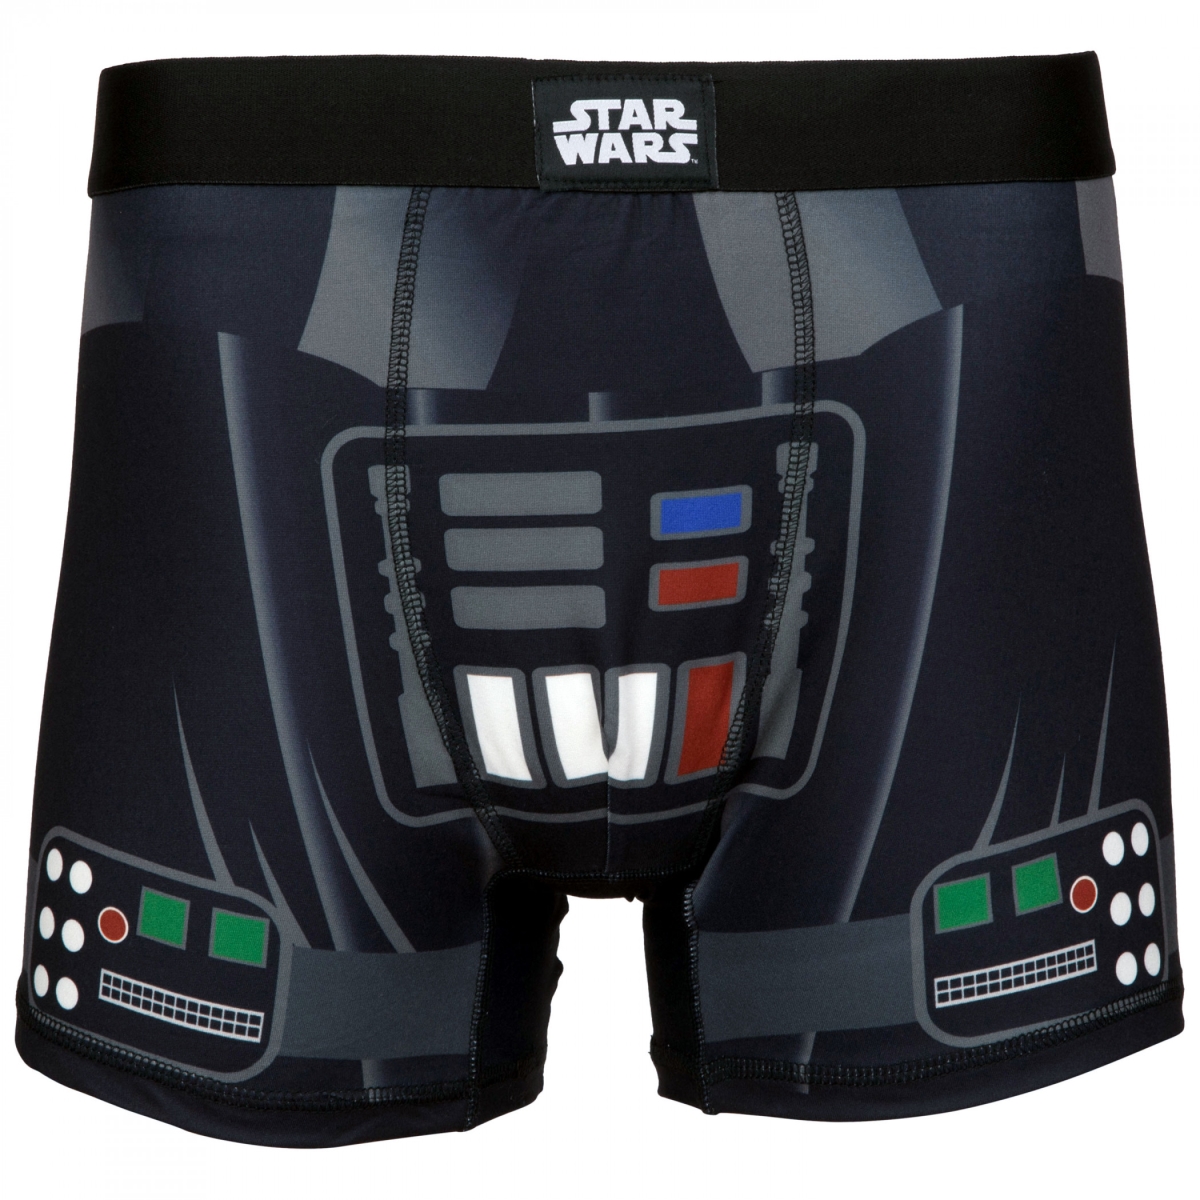 851928-ge-44-46  Darth Vader Cosplay Mens Underwear Boxer Briefs - 2XL - 44-46 -  Star Wars, 851928-ge(44-46)